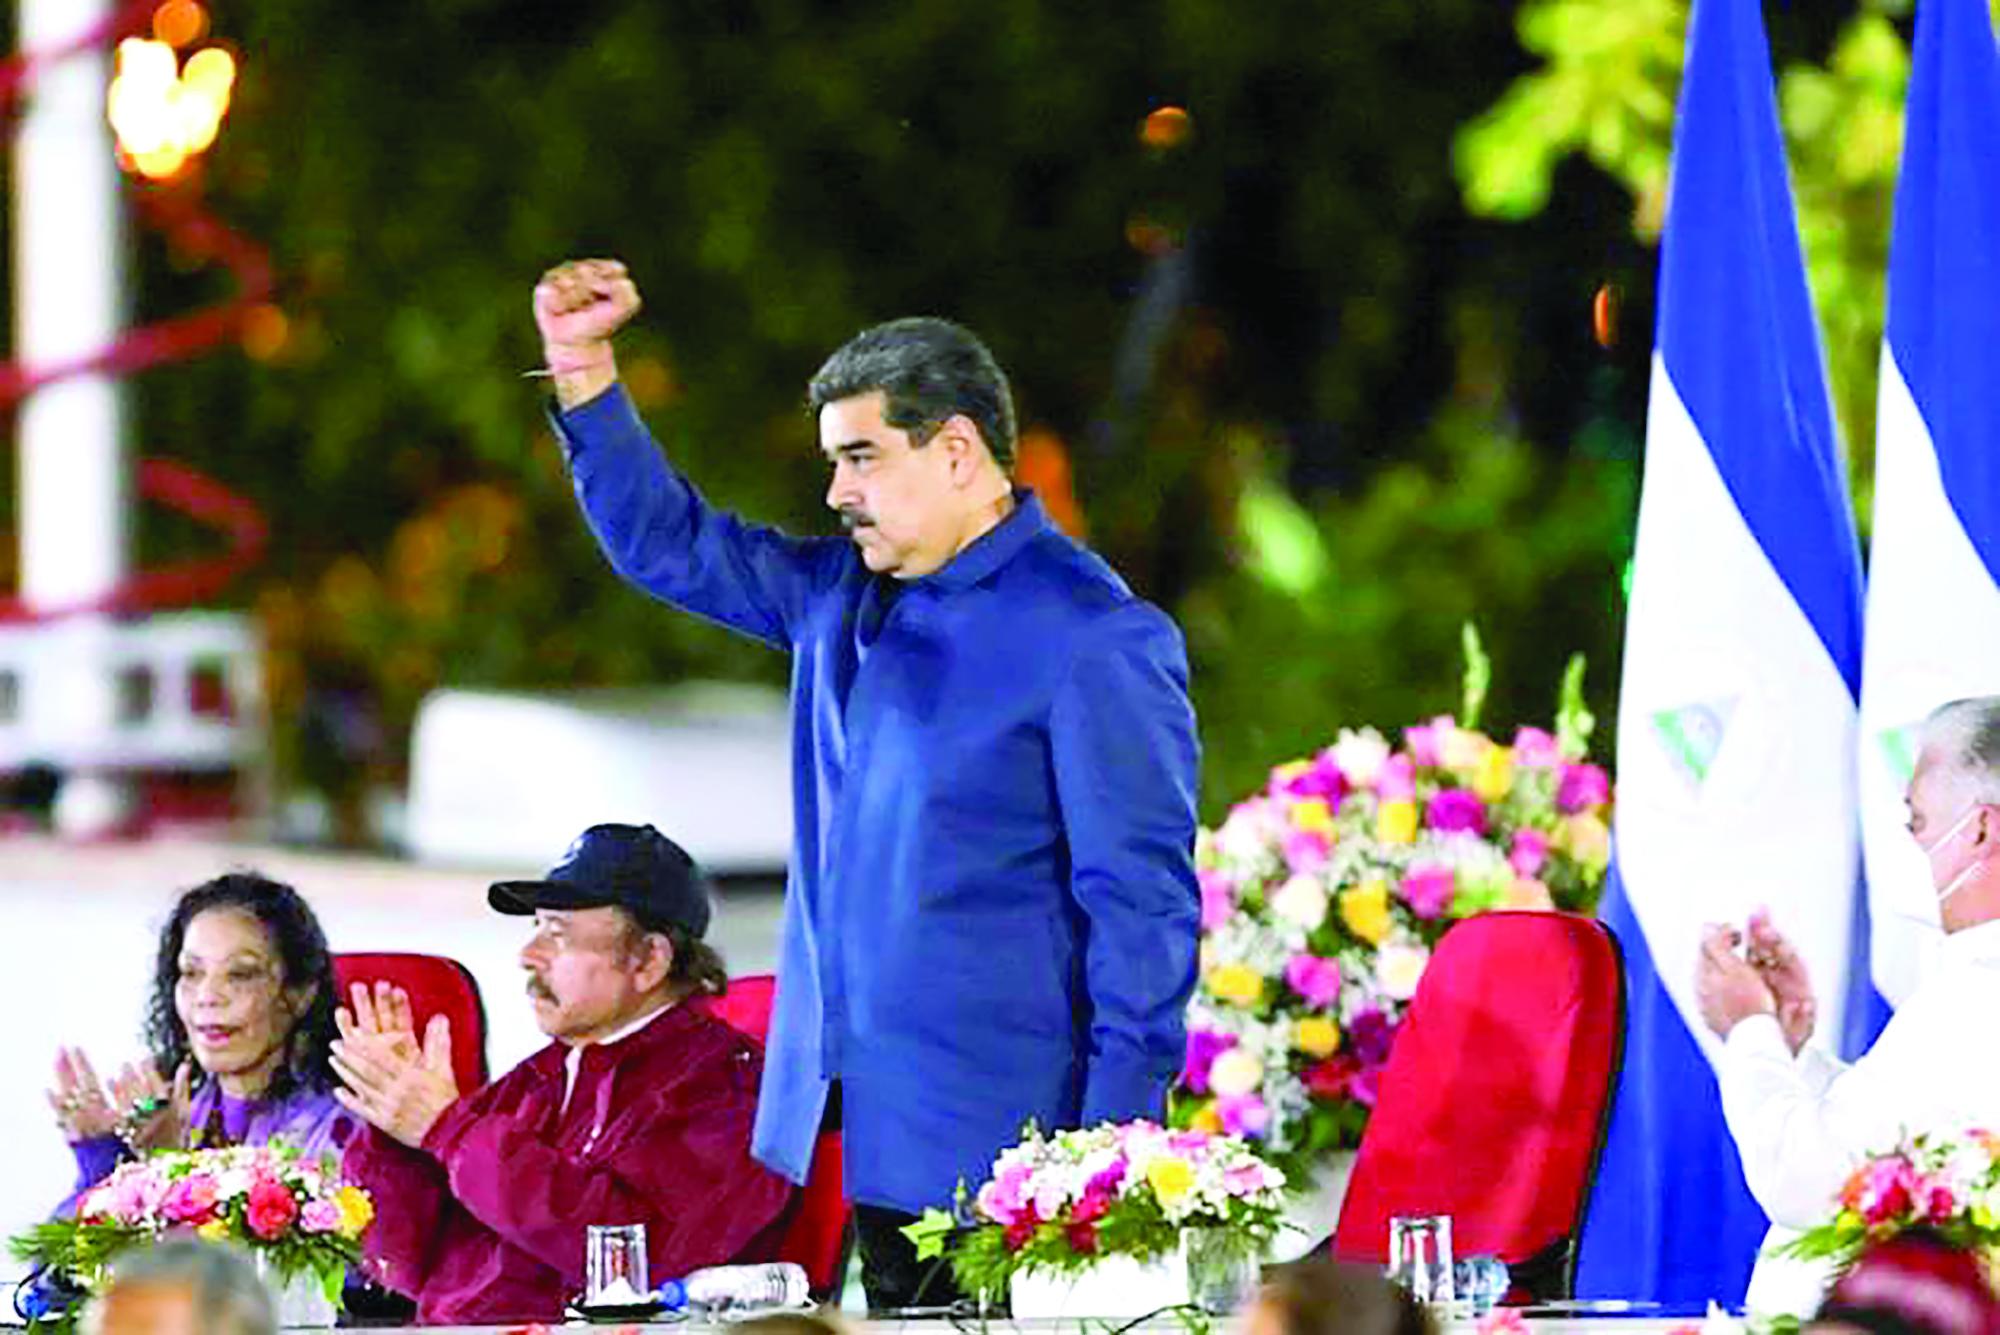 $!De esta manera, antes de comenzar su gobierno, se desmarca de los líderes autoritarios de izquierda de América Latina, como Nicolás Maduro de Venezuela y Daniel Ortega de Nicaragua.